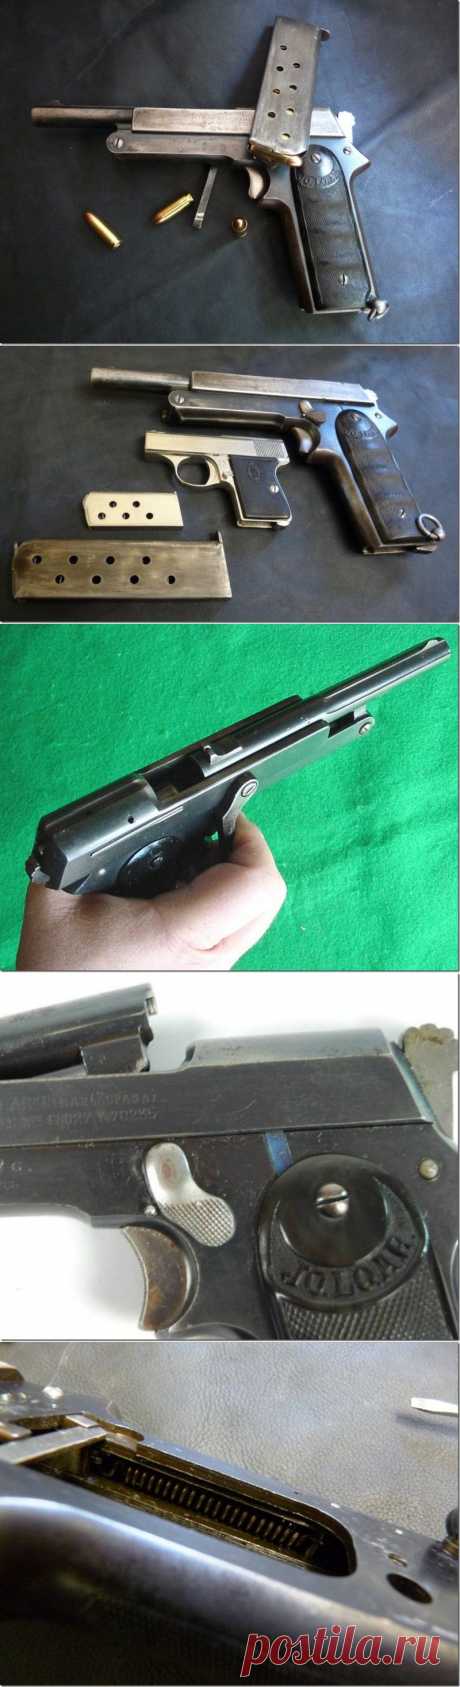 Пистолет JO.LO.AR | Все об оружии  \\ Испанец Хосе Лопес Арнаиз (Jose Lopes Arnaiz) в 1919 году запатентовал приспособление для своего пистолета, которое позволяло взводить затвор одной рукой (испанский патент №70235). Этот пистолет JO.LO.AR. в основном был предназначен для конных войск. Ведь для этого рода войск довольно актуально иметь оружие, которое можно привести в боевое положение одной рукой.